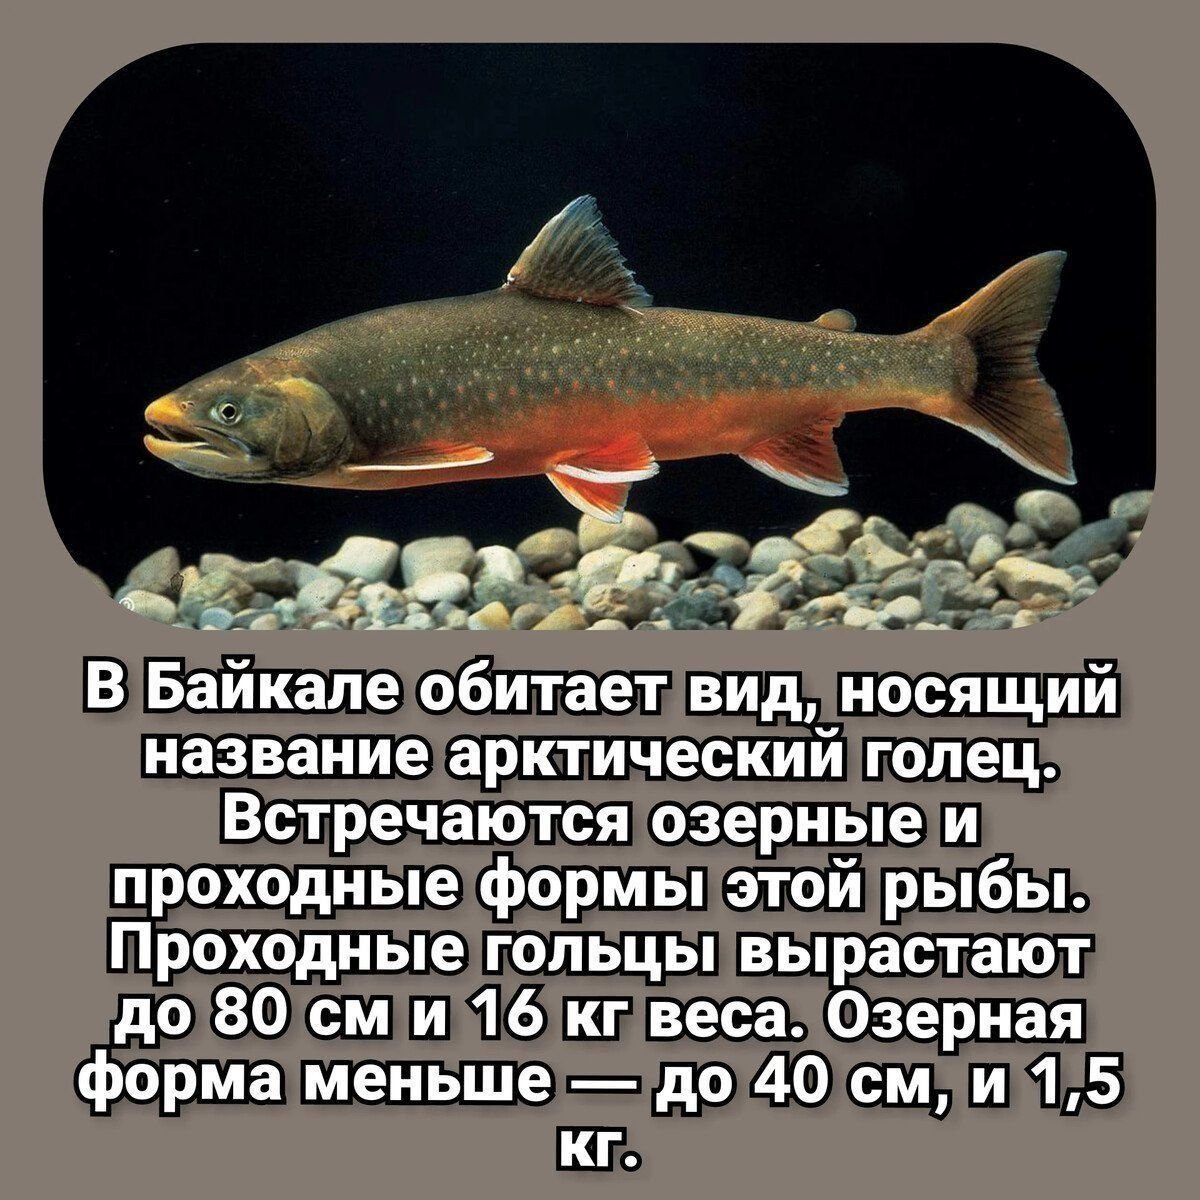 Уникальные и особо ценные рыбы Байкала